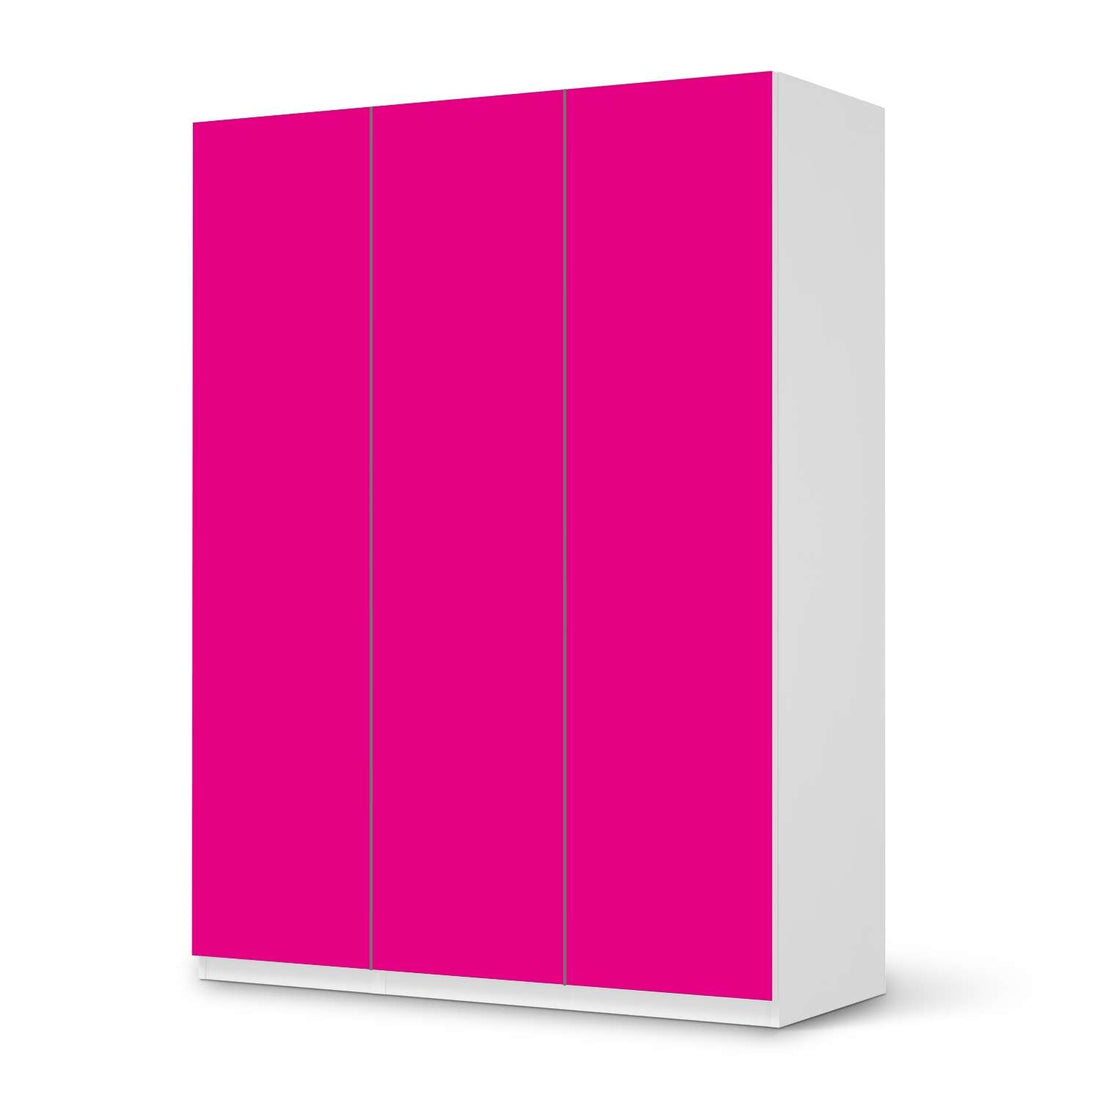 Folie für Möbel Pink Dark - IKEA Pax Schrank 201 cm Höhe - 3 Türen - weiss